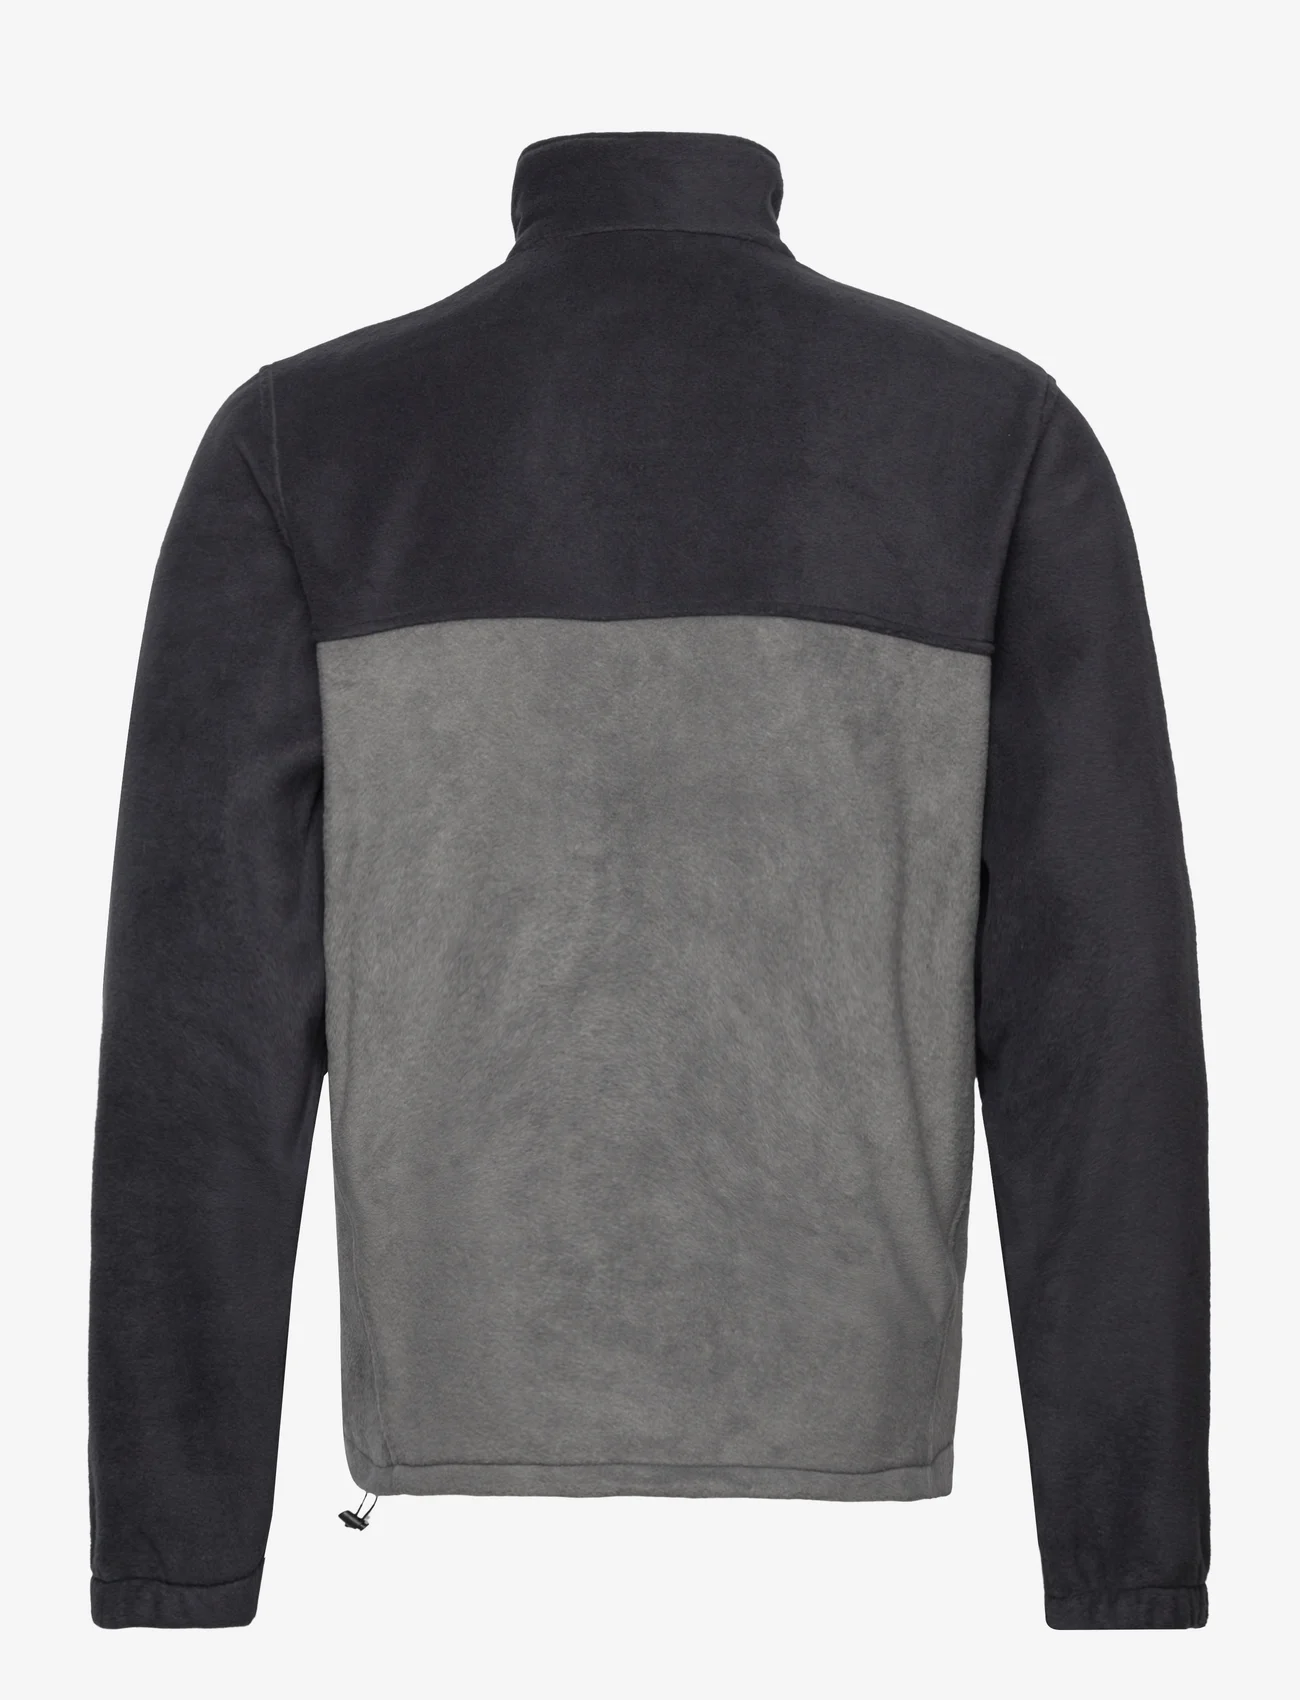 Columbia Sportswear - Steens Mountain Full Zip 2.0 - fleecet - black, grill - 1